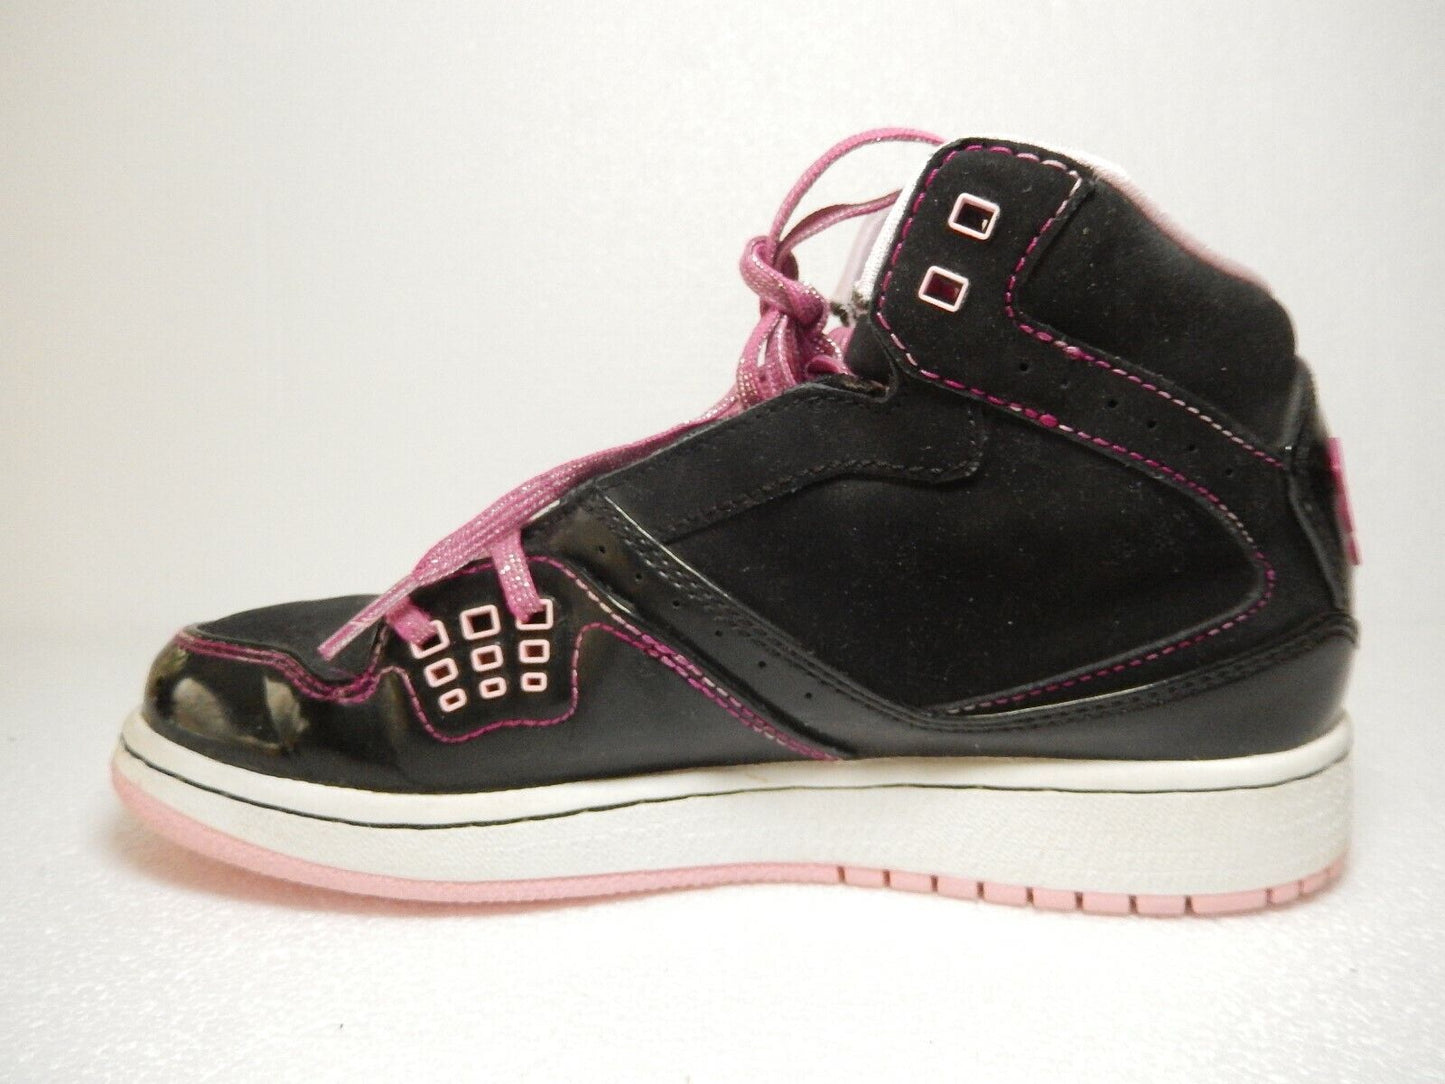 Nike Air Jordan 1 Flight Black White Pink Girls SIZE 3.5Y GS 371389 029